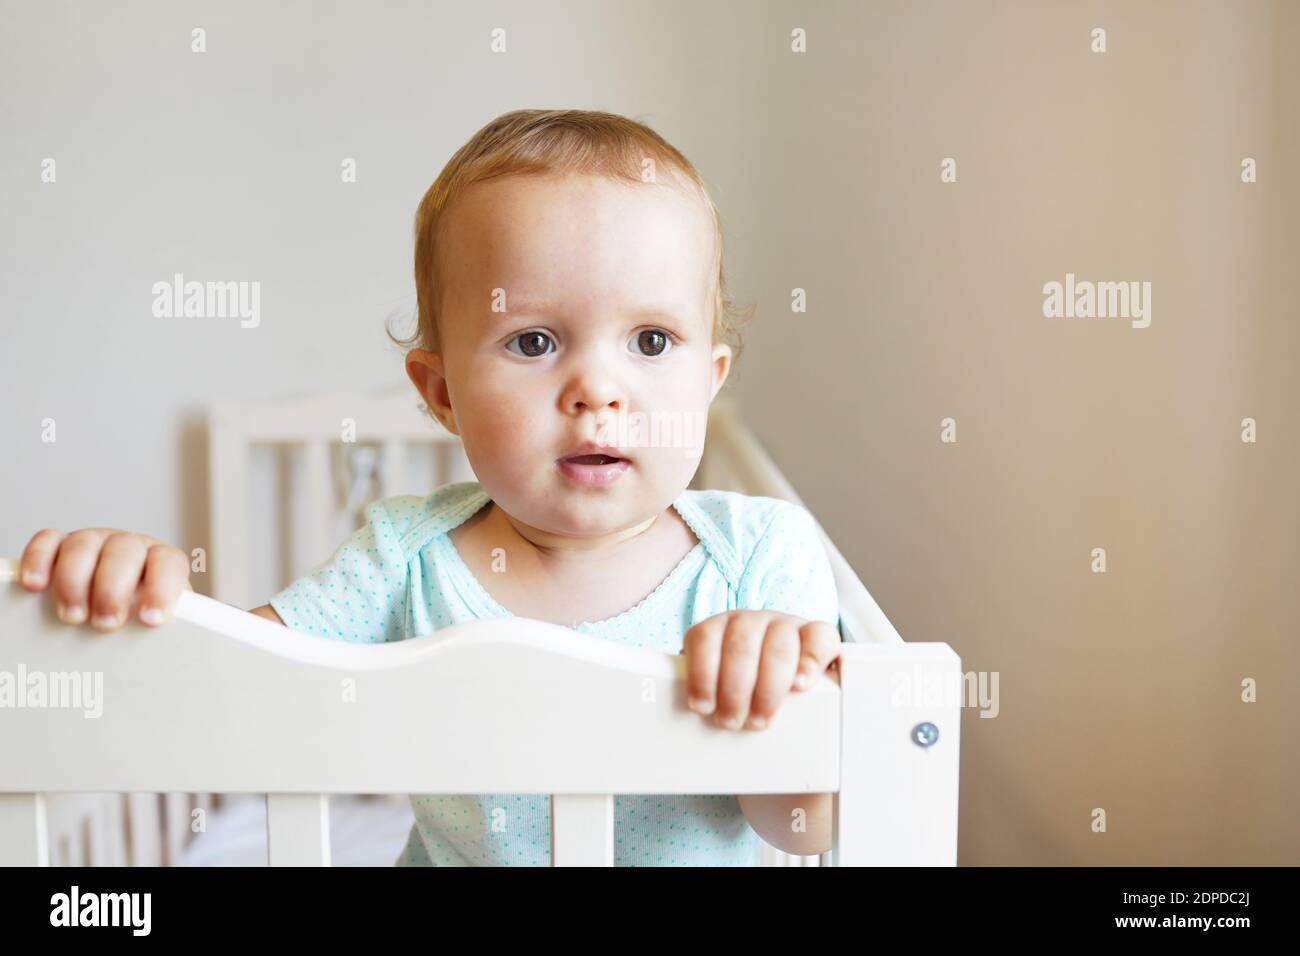 Kleines Kind steht im Kinderbett, schönes Kind mit Blick auf das kleine Bett  Stockfotografie - Alamy